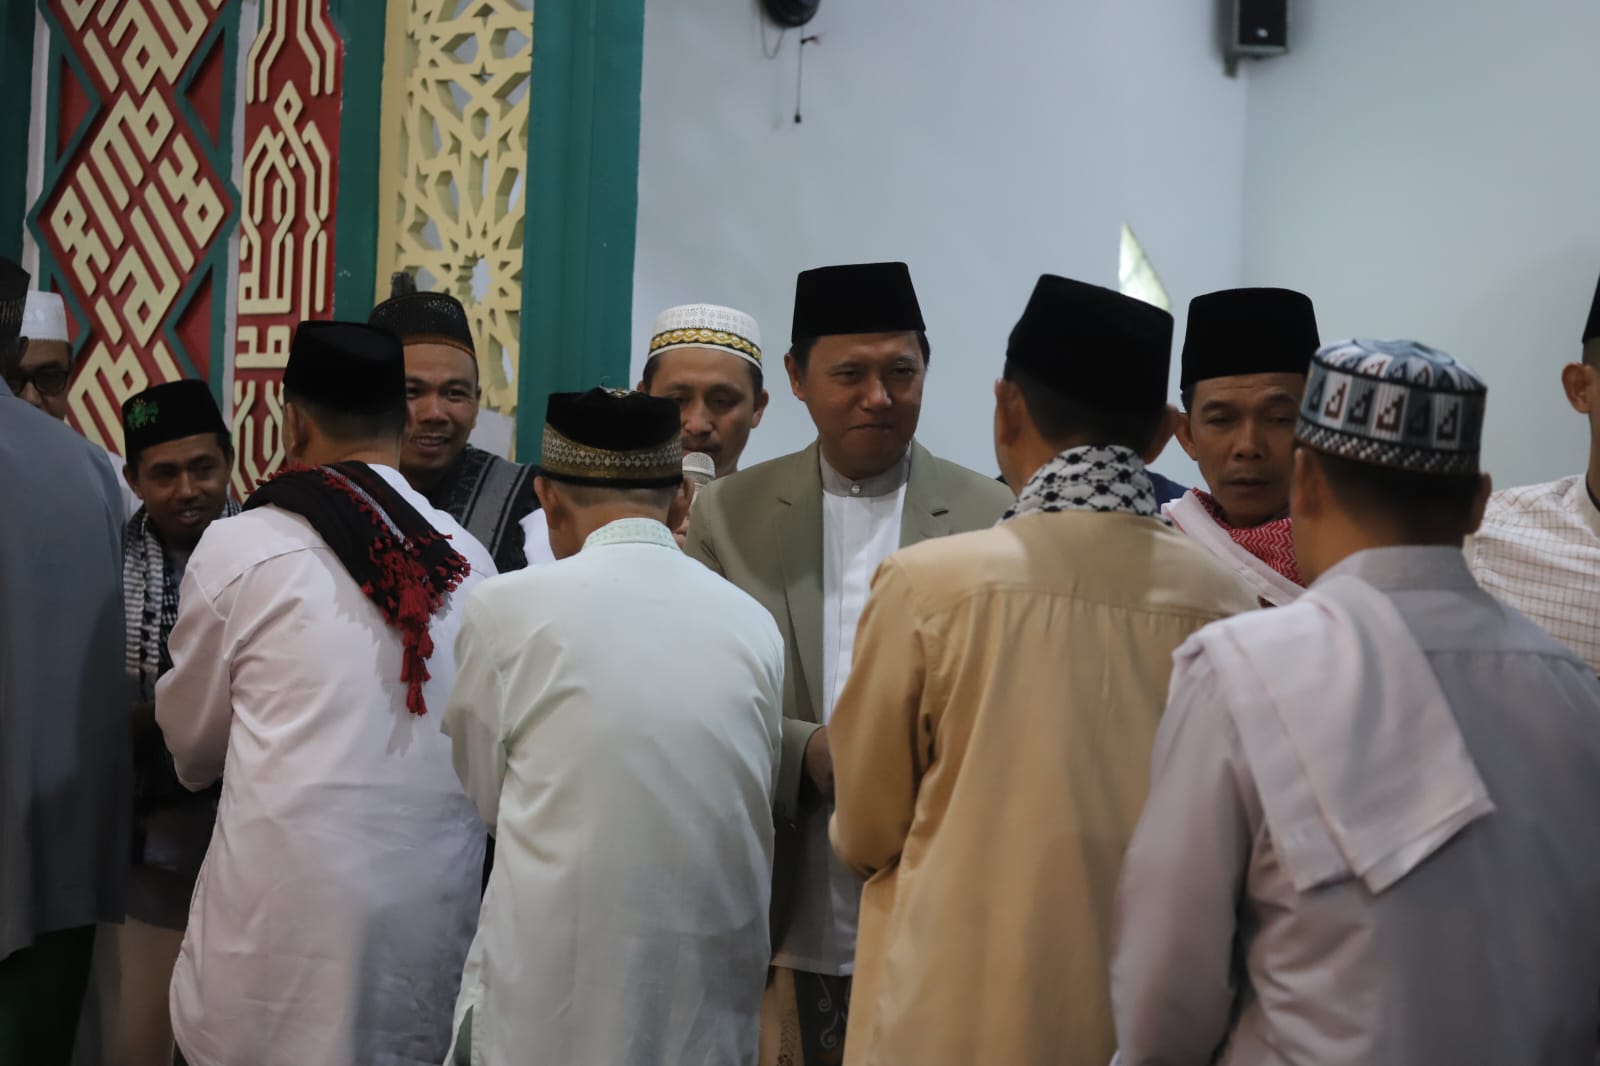 Pj Bupati Lampung Barat, Dandim dan Ketua MUI Shalat Ied di Masjid Agung Baiturrahim